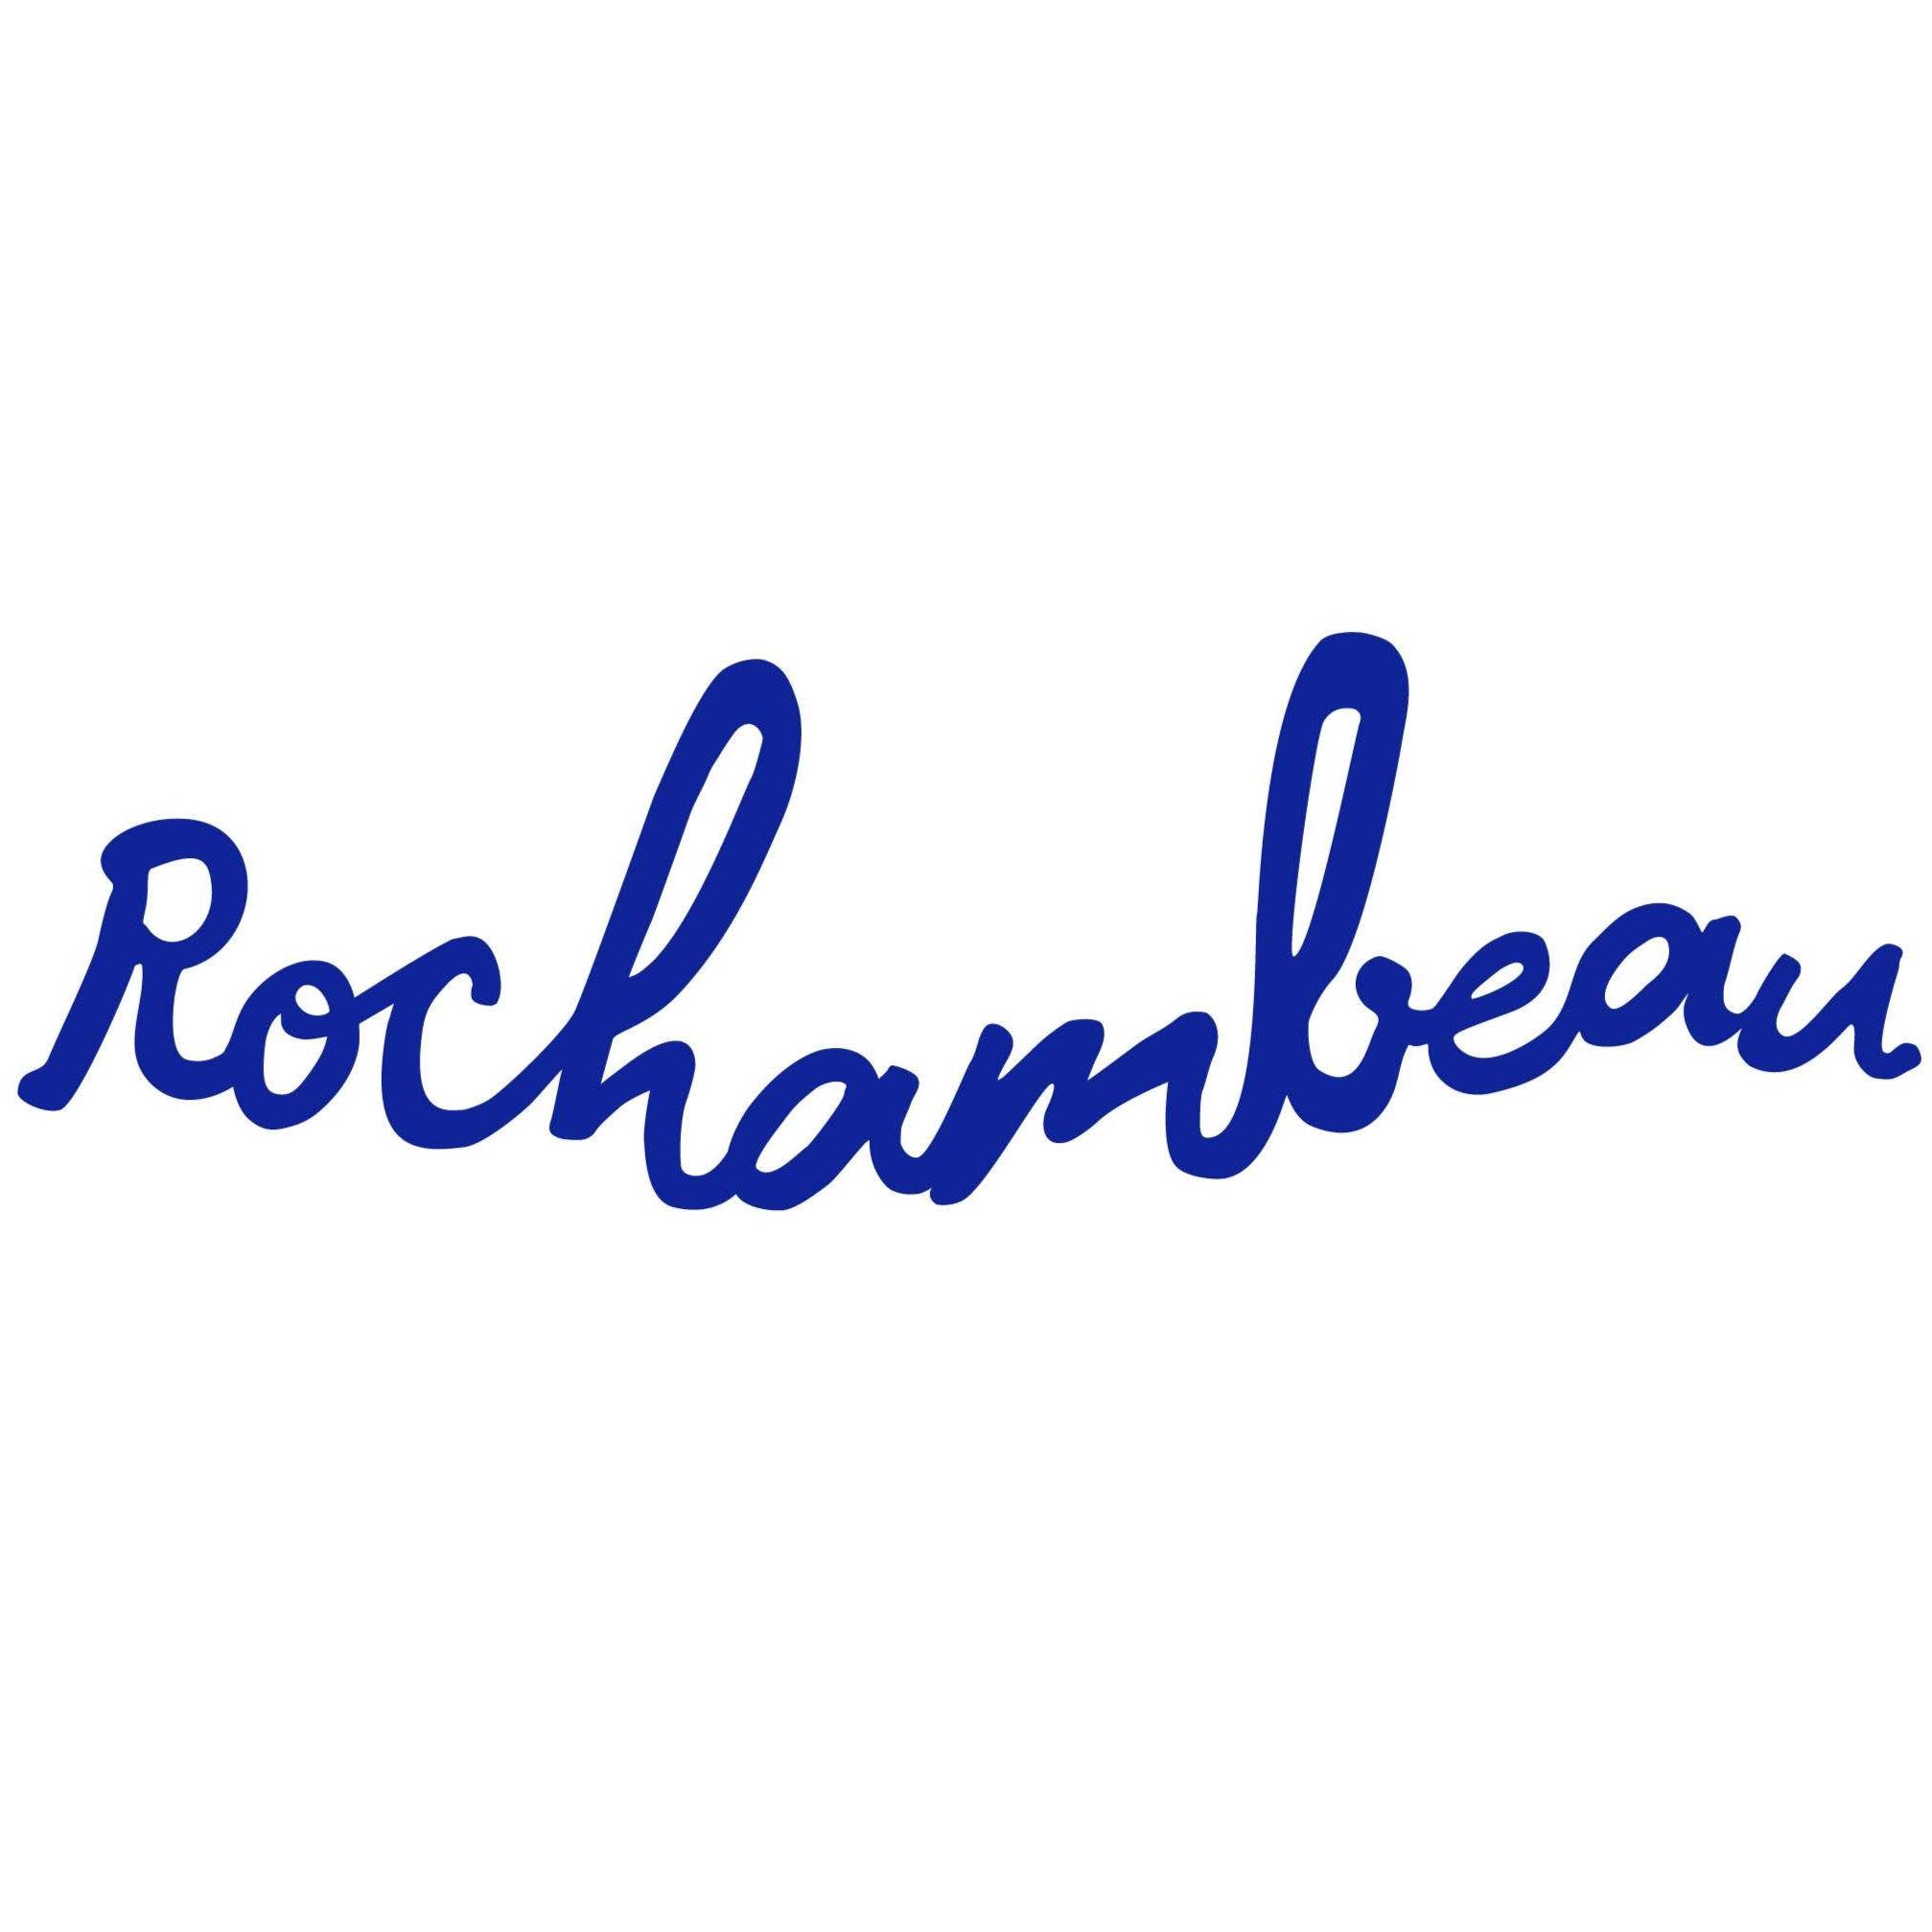 Rochambeau's Logo